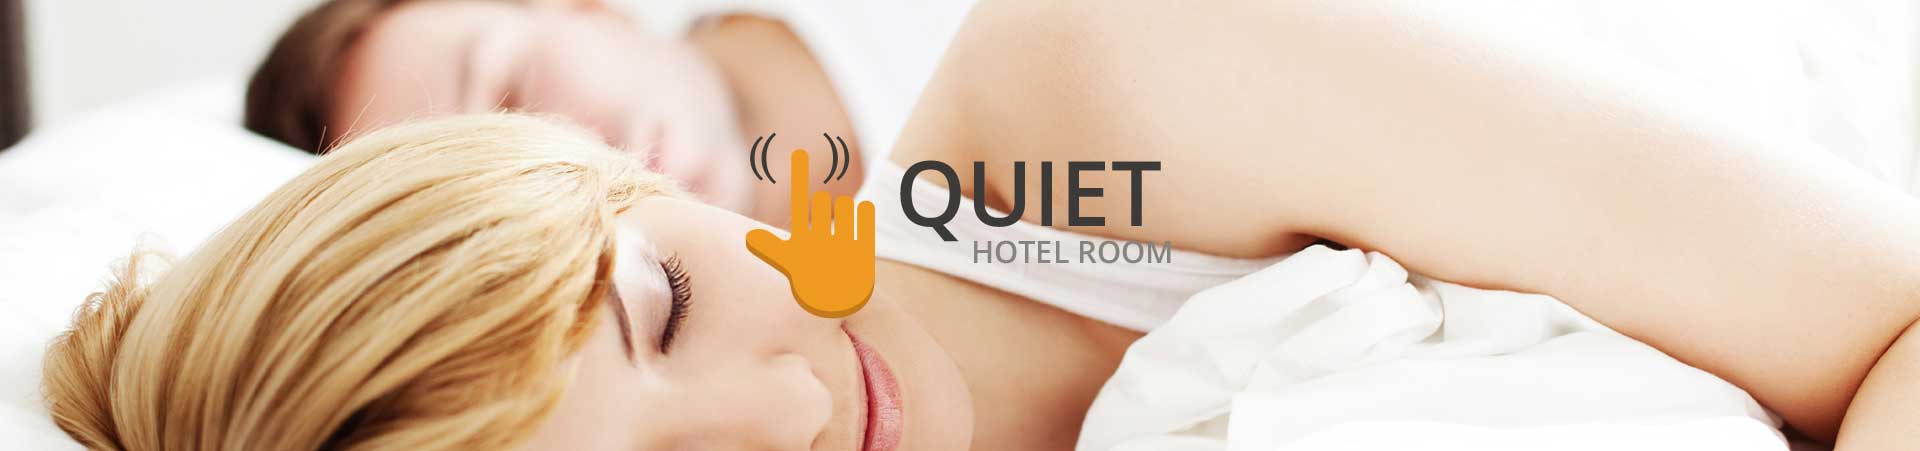 Quiet Hotel Room